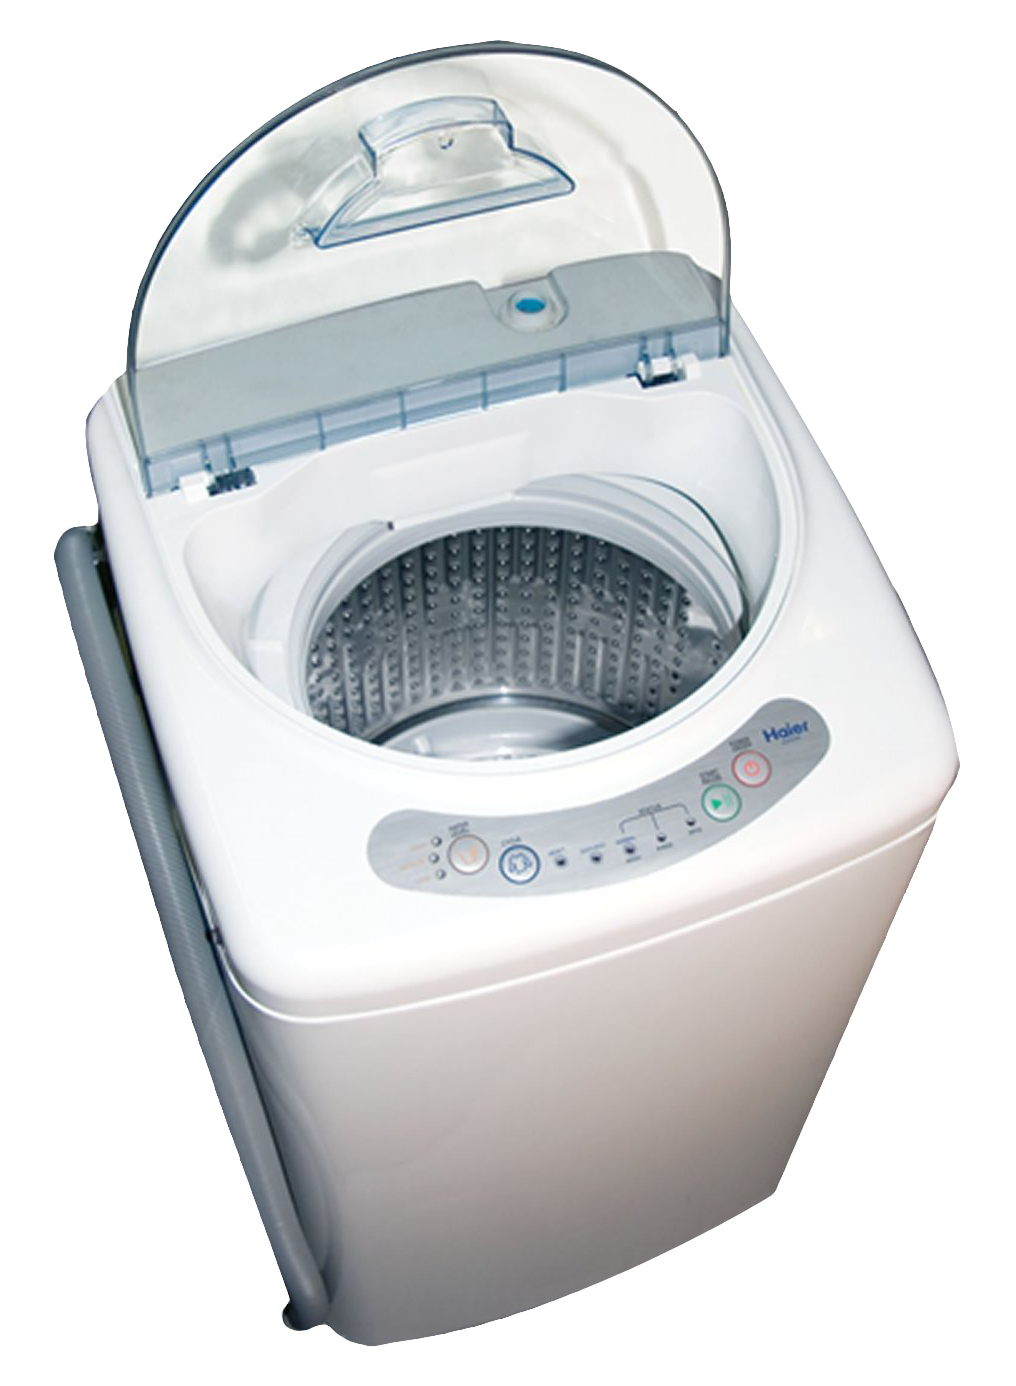 Laundry Washing Machine PNG Photo Image